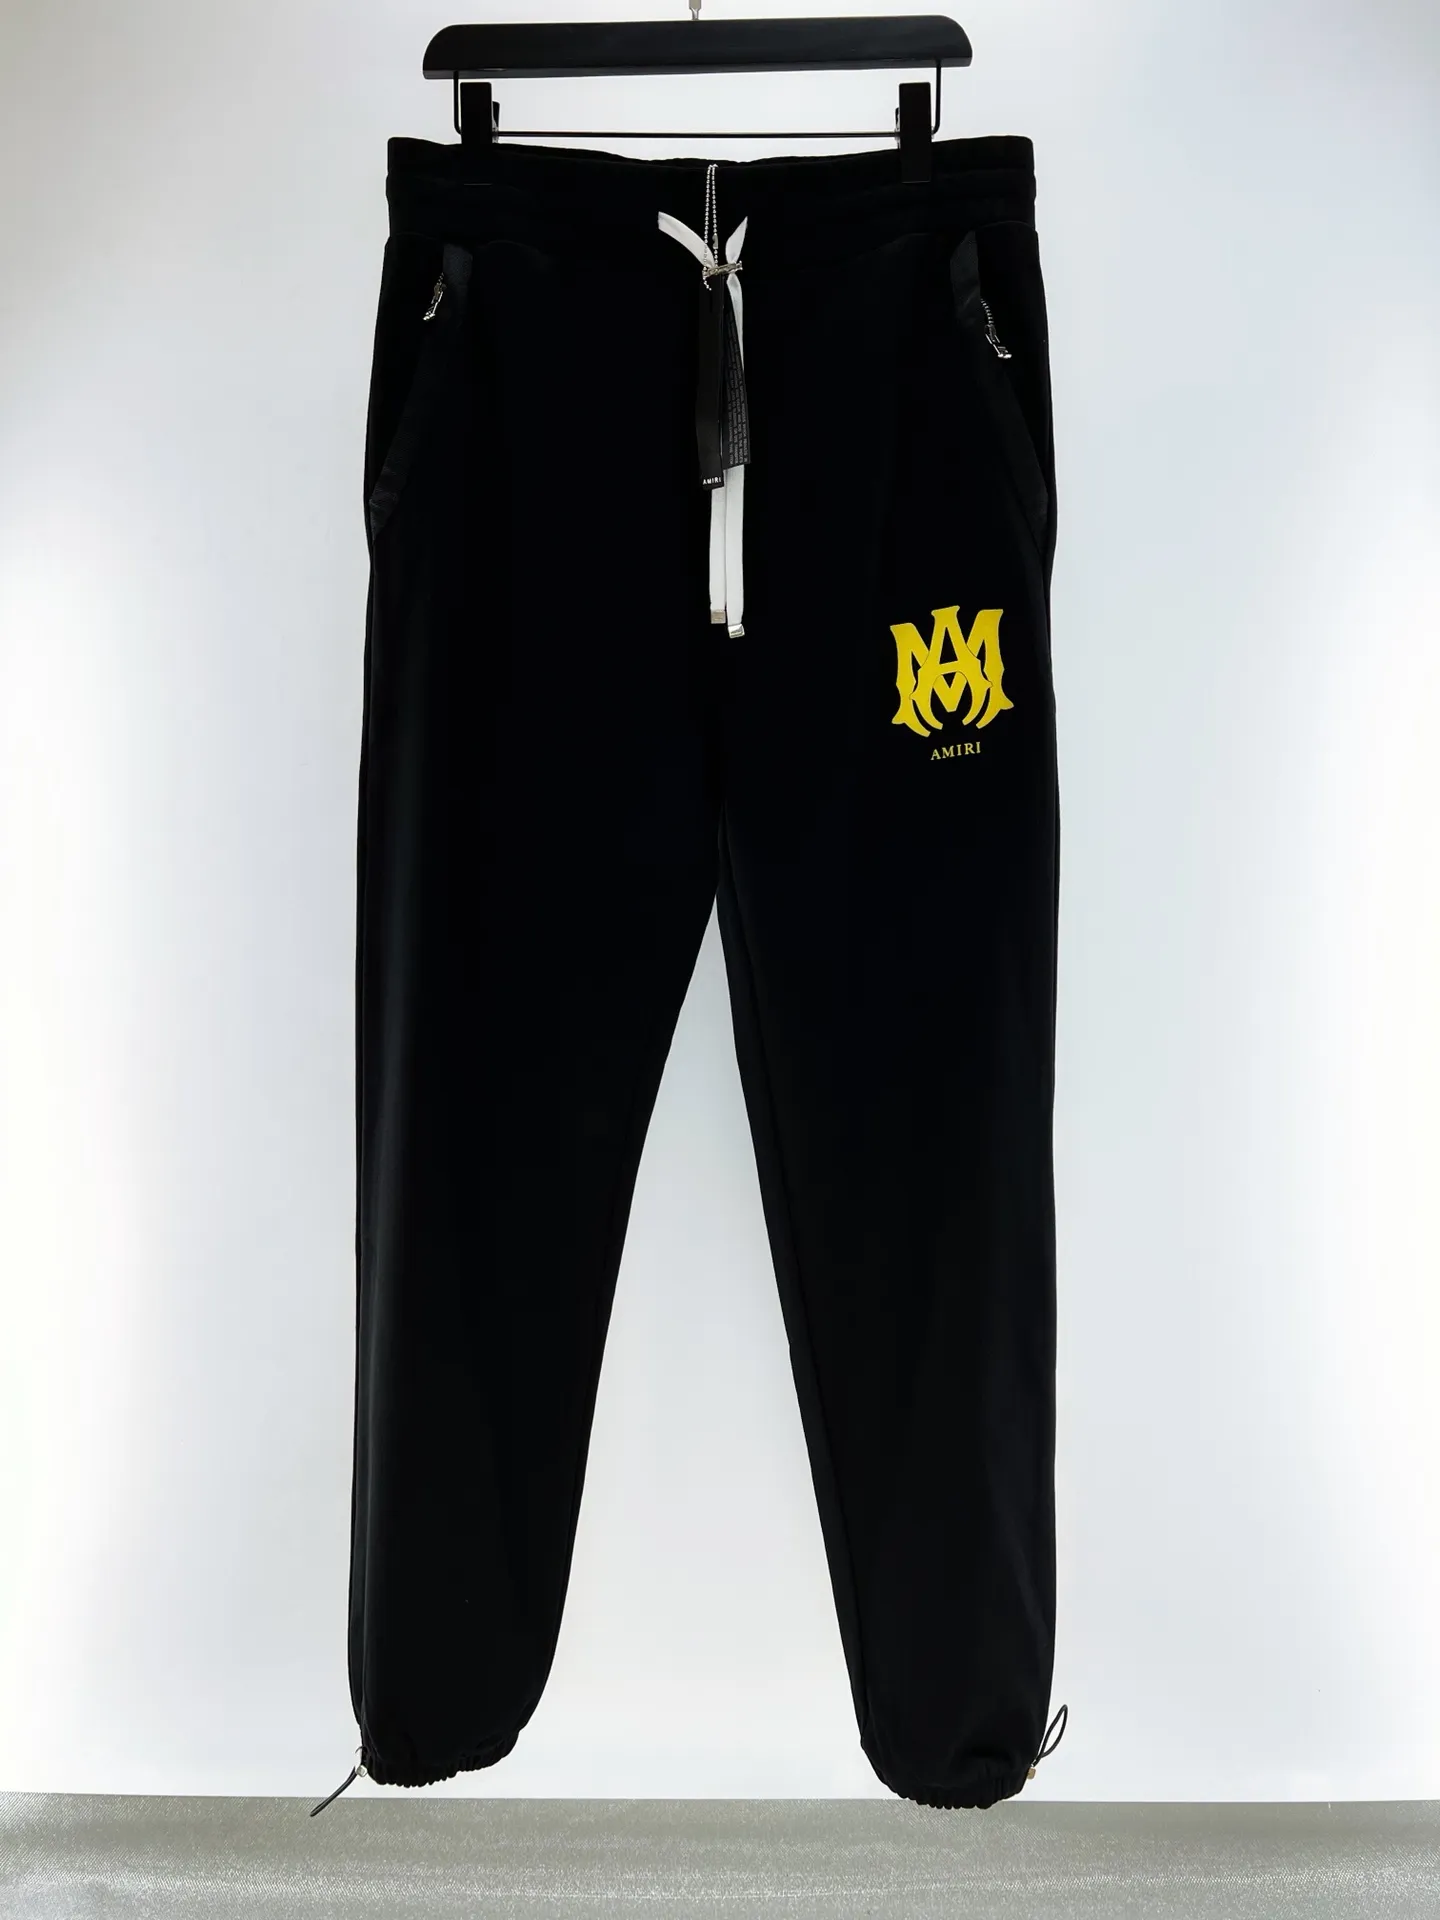 2023 Bahar Yeni Fashions Erkek Tasarımcı Yüksek Kaliteli Siyah Jogging Kargo Pantolonu ~ ABD Boyut Pantolonlar ~ Üstler Erkek Yoga Joggers Ter Pantolon Terim